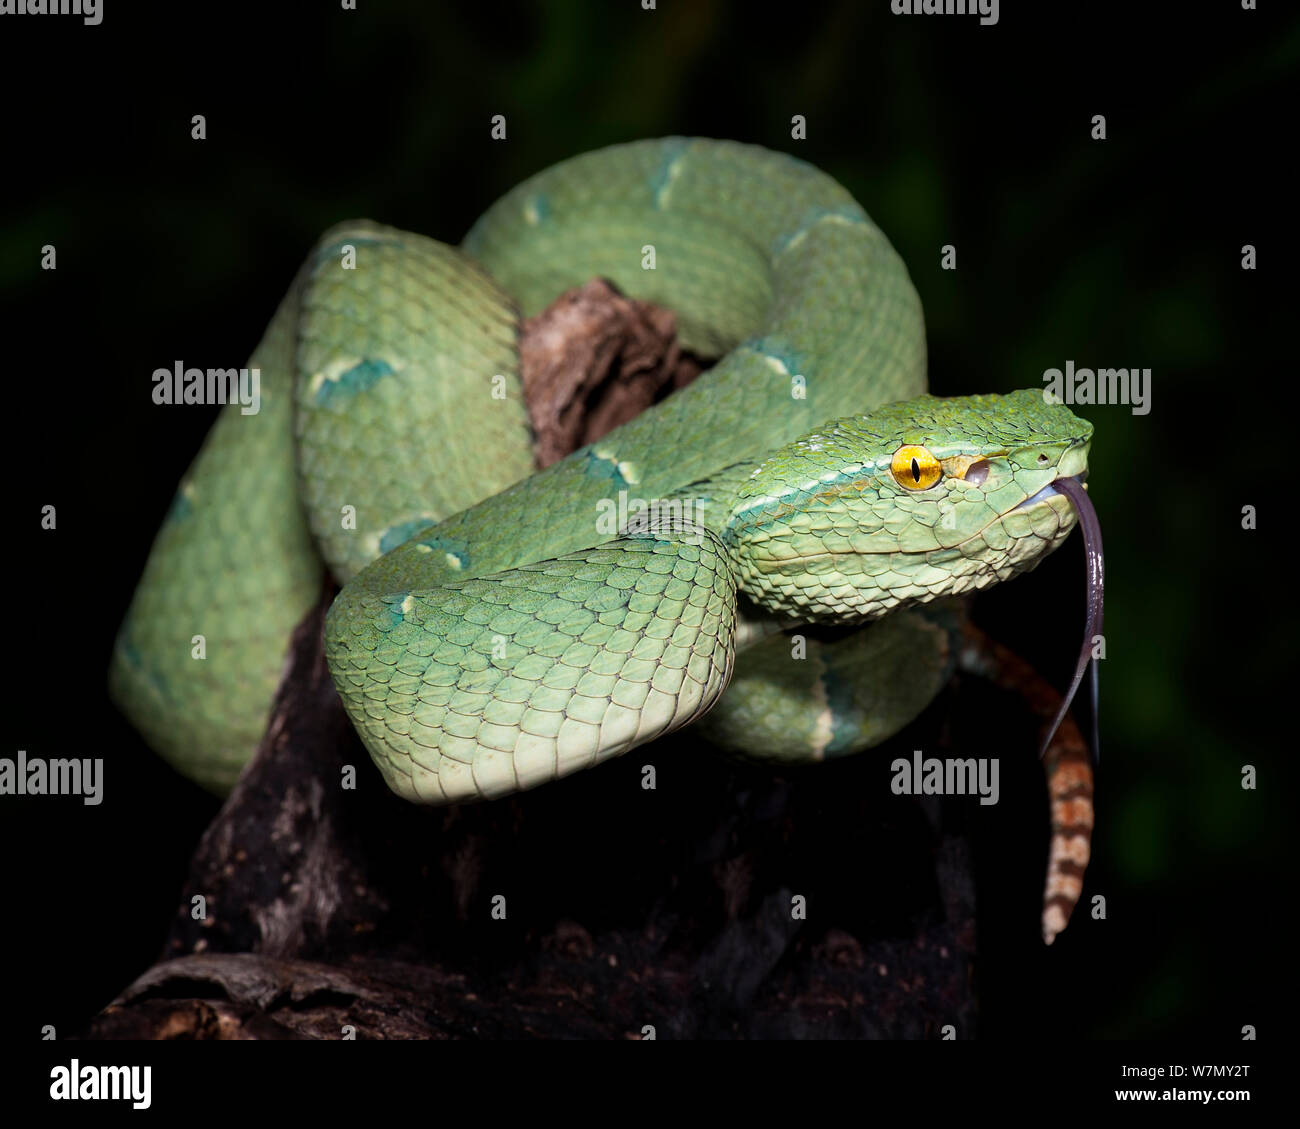 Tempel / Bornesischen gekielt Green pit Viper (Tropidolaemus subannulatus/Ein älterer Name) unverlierbaren, aus Indonesien, Malaysia und den Philippinen Stockfoto